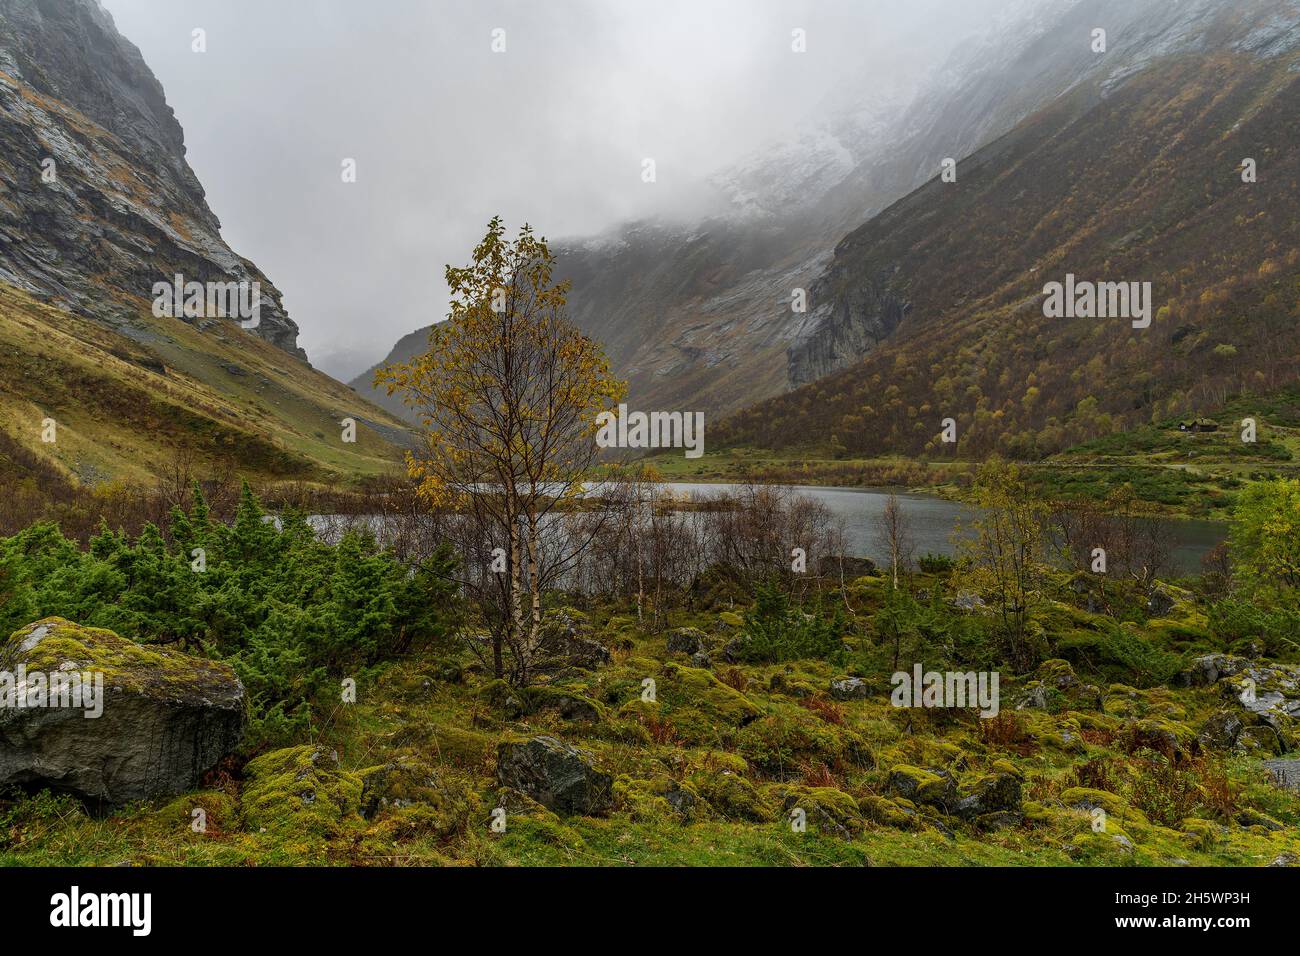 gelbe Birke im Tal von Sunnmørsalpene, mit See im engen Tal zwischen steilen Bergen. Herbst en Norwegen. Norwegisches Wetter, neblig und regnerisch. Foto de stock